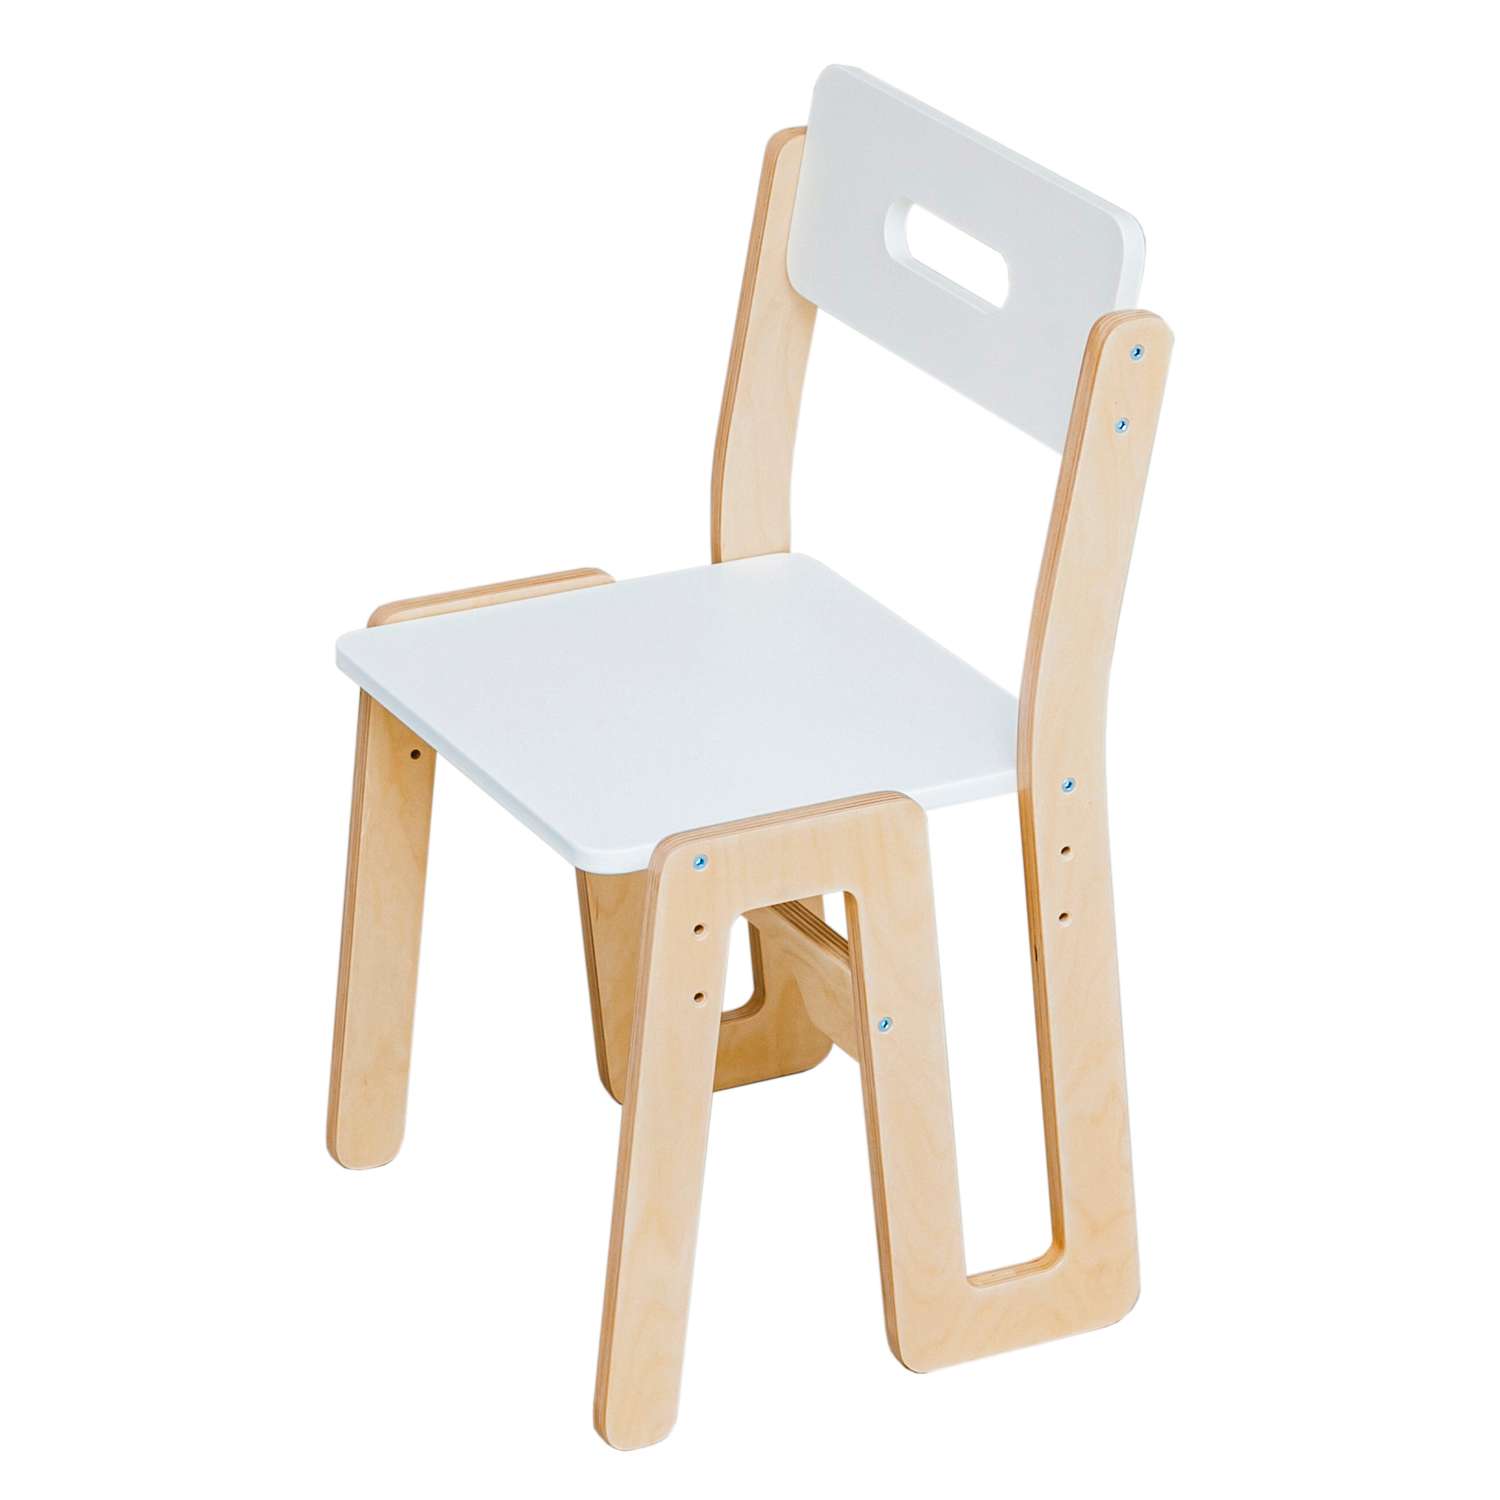 Комплект детской мебели Limoni-Kids Растущий стульчик и столик с грифельной доской и контейнерами - фото 11